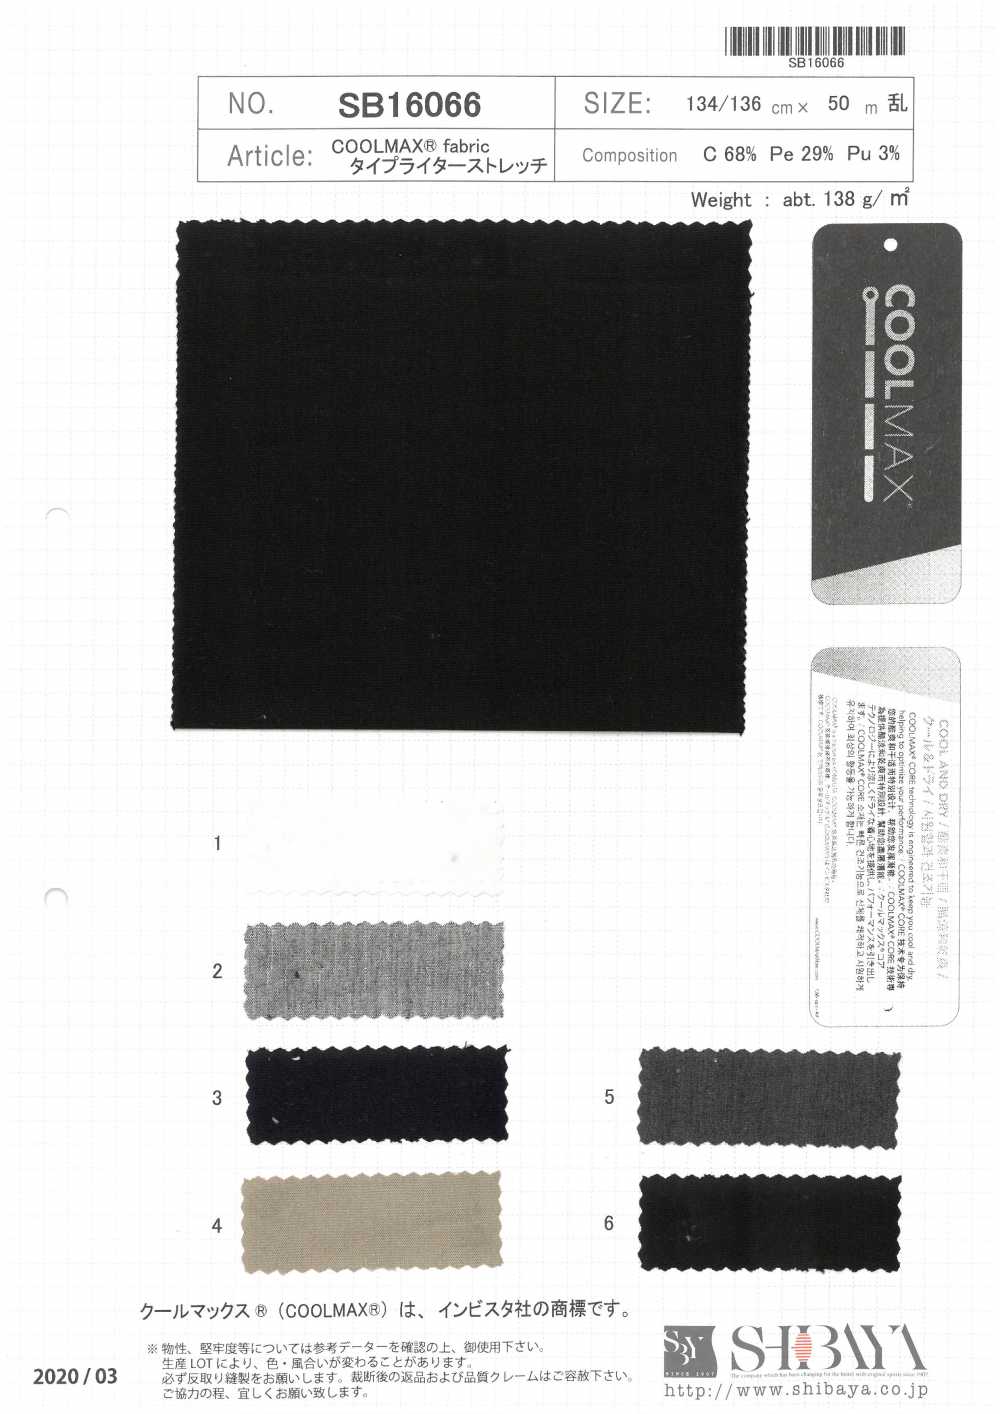 SB16066 Tela Elástica Para Máquina De Escribir COOLMAX®[Fabrica Textil] SHIBAYA